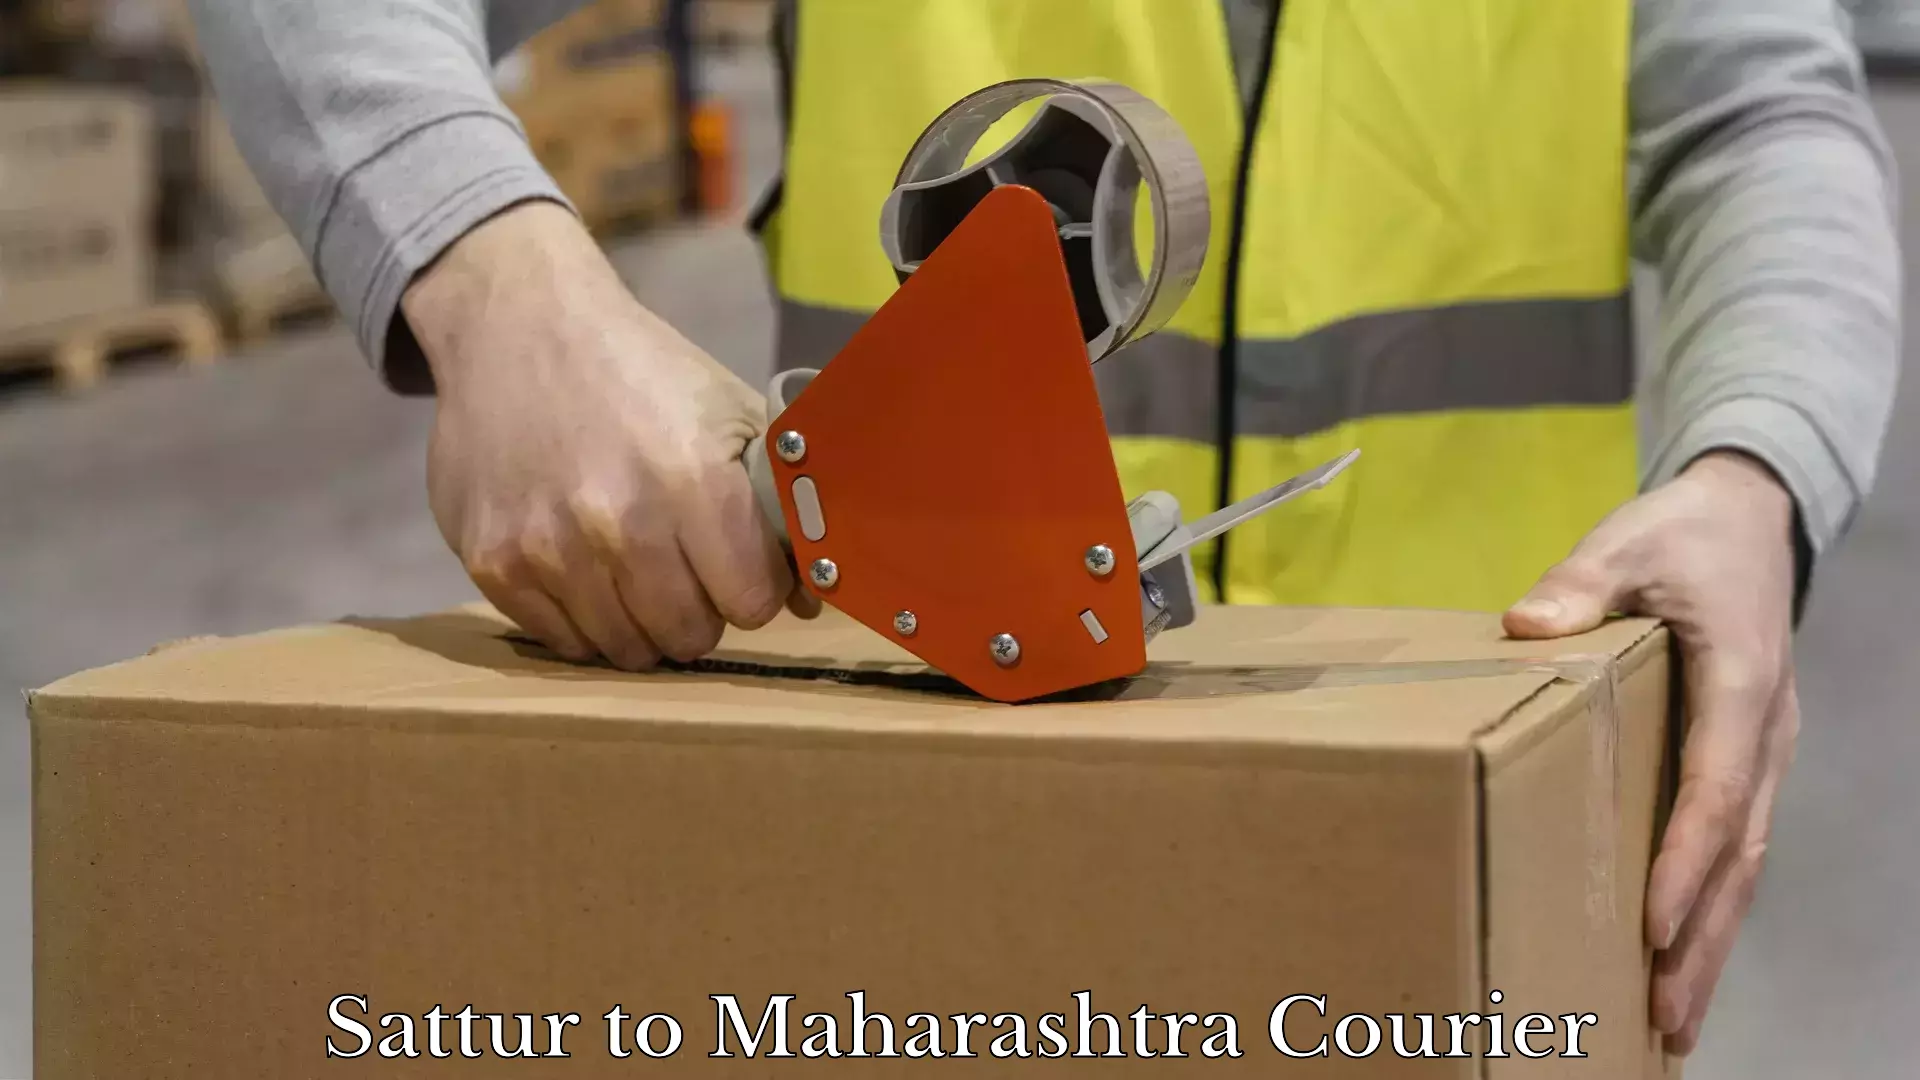 Furniture transport experts Sattur to Maharashtra